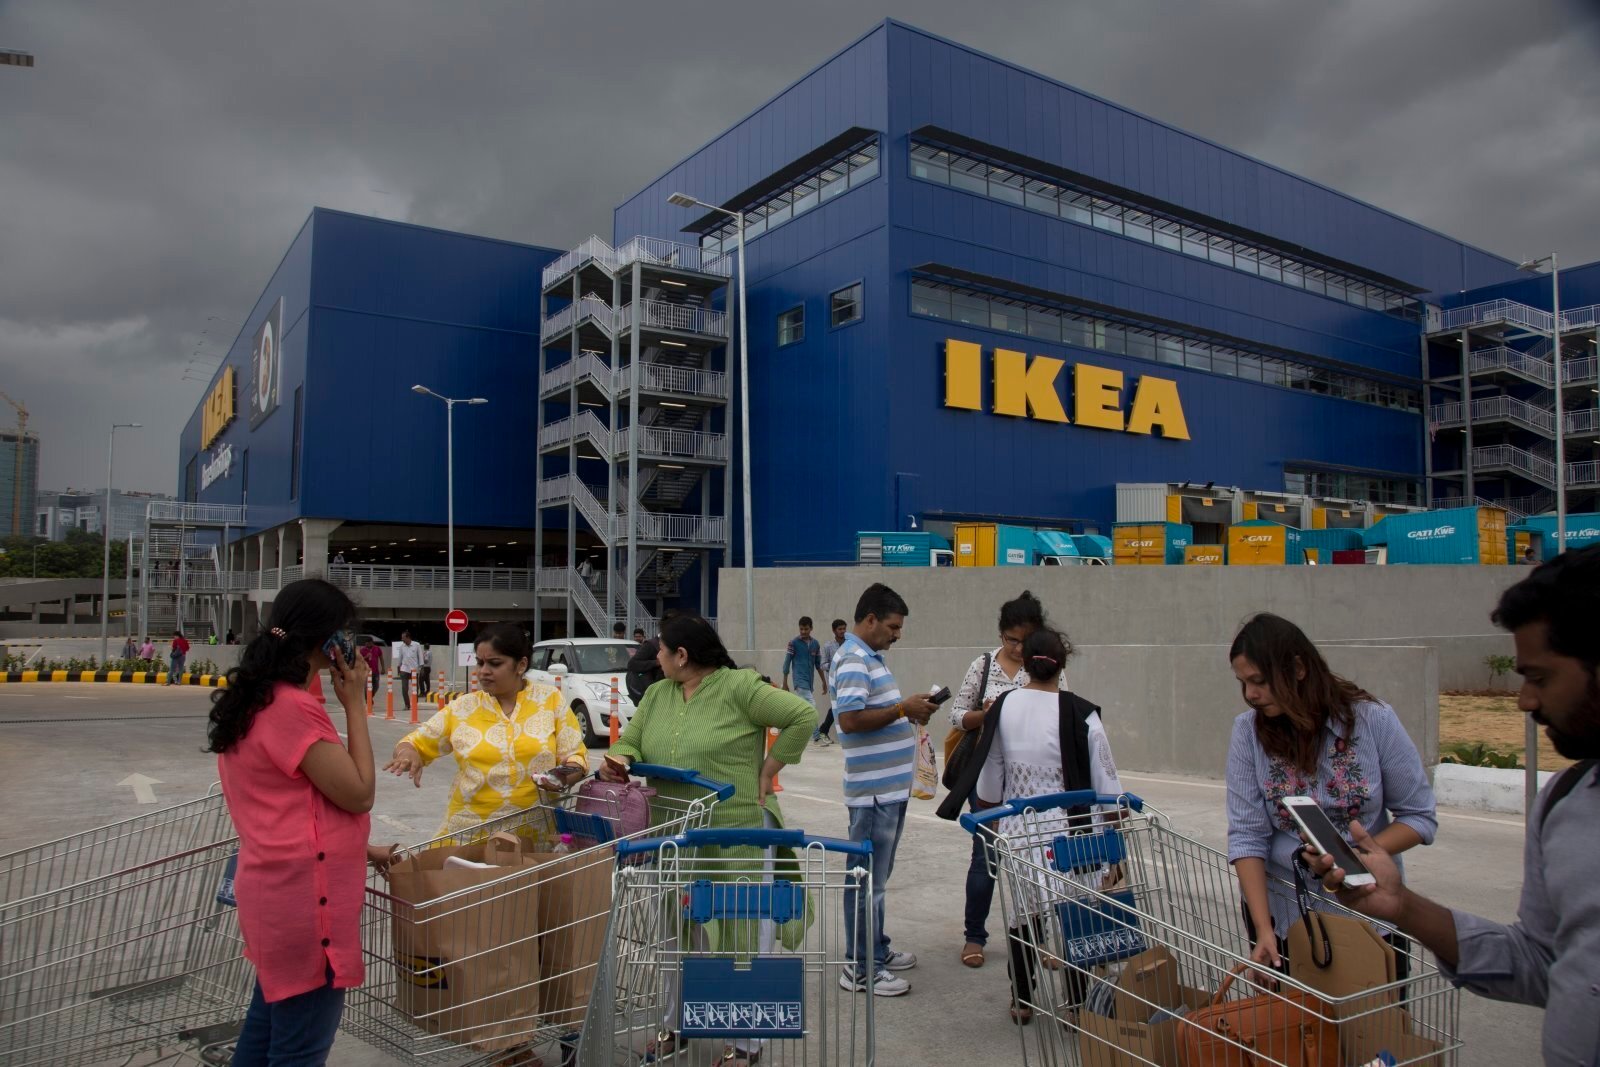 Τα IKEA θα παράγουν περισσότερη ενέργεια από όση καταναλώνουν μέχρι το 2020